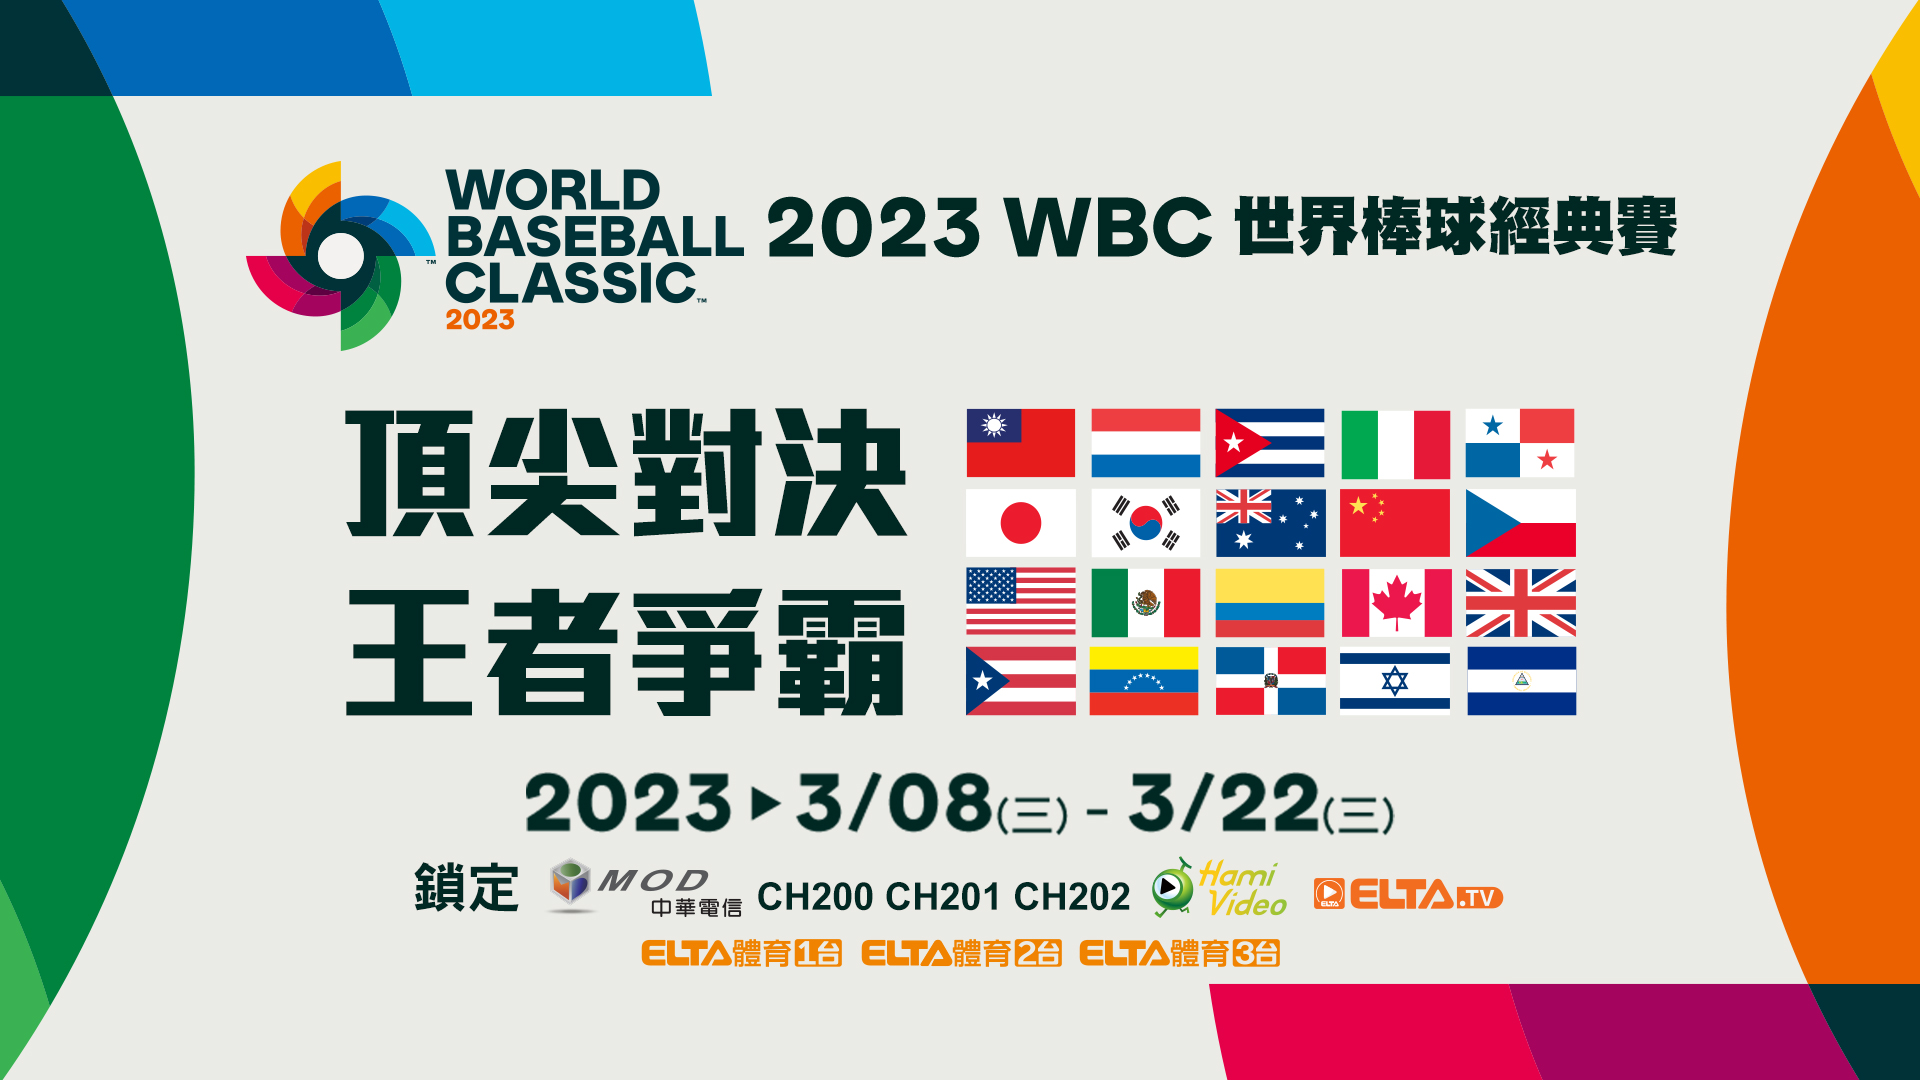 2023 WBC世界棒球經典賽 新媒體全場次獨家，鎖定MOD Hami Video運動館愛爾達電視。官方提供